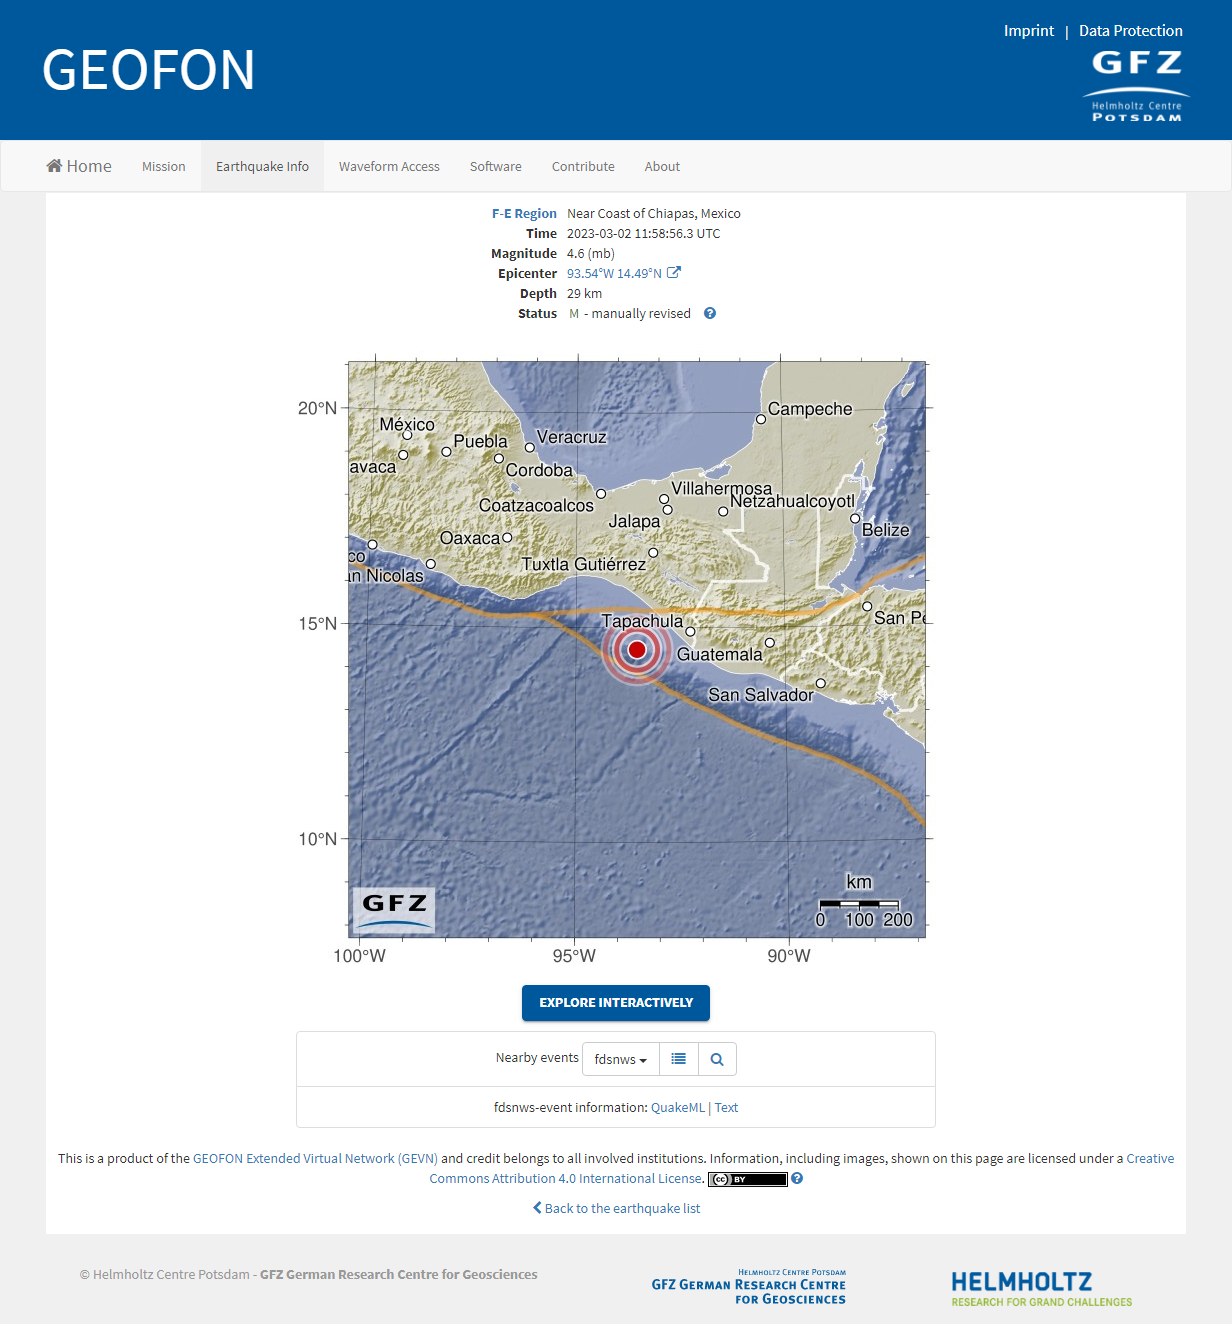 GEOFON Event gfz2023egnx_ Near Coast of Chiapas, M.png